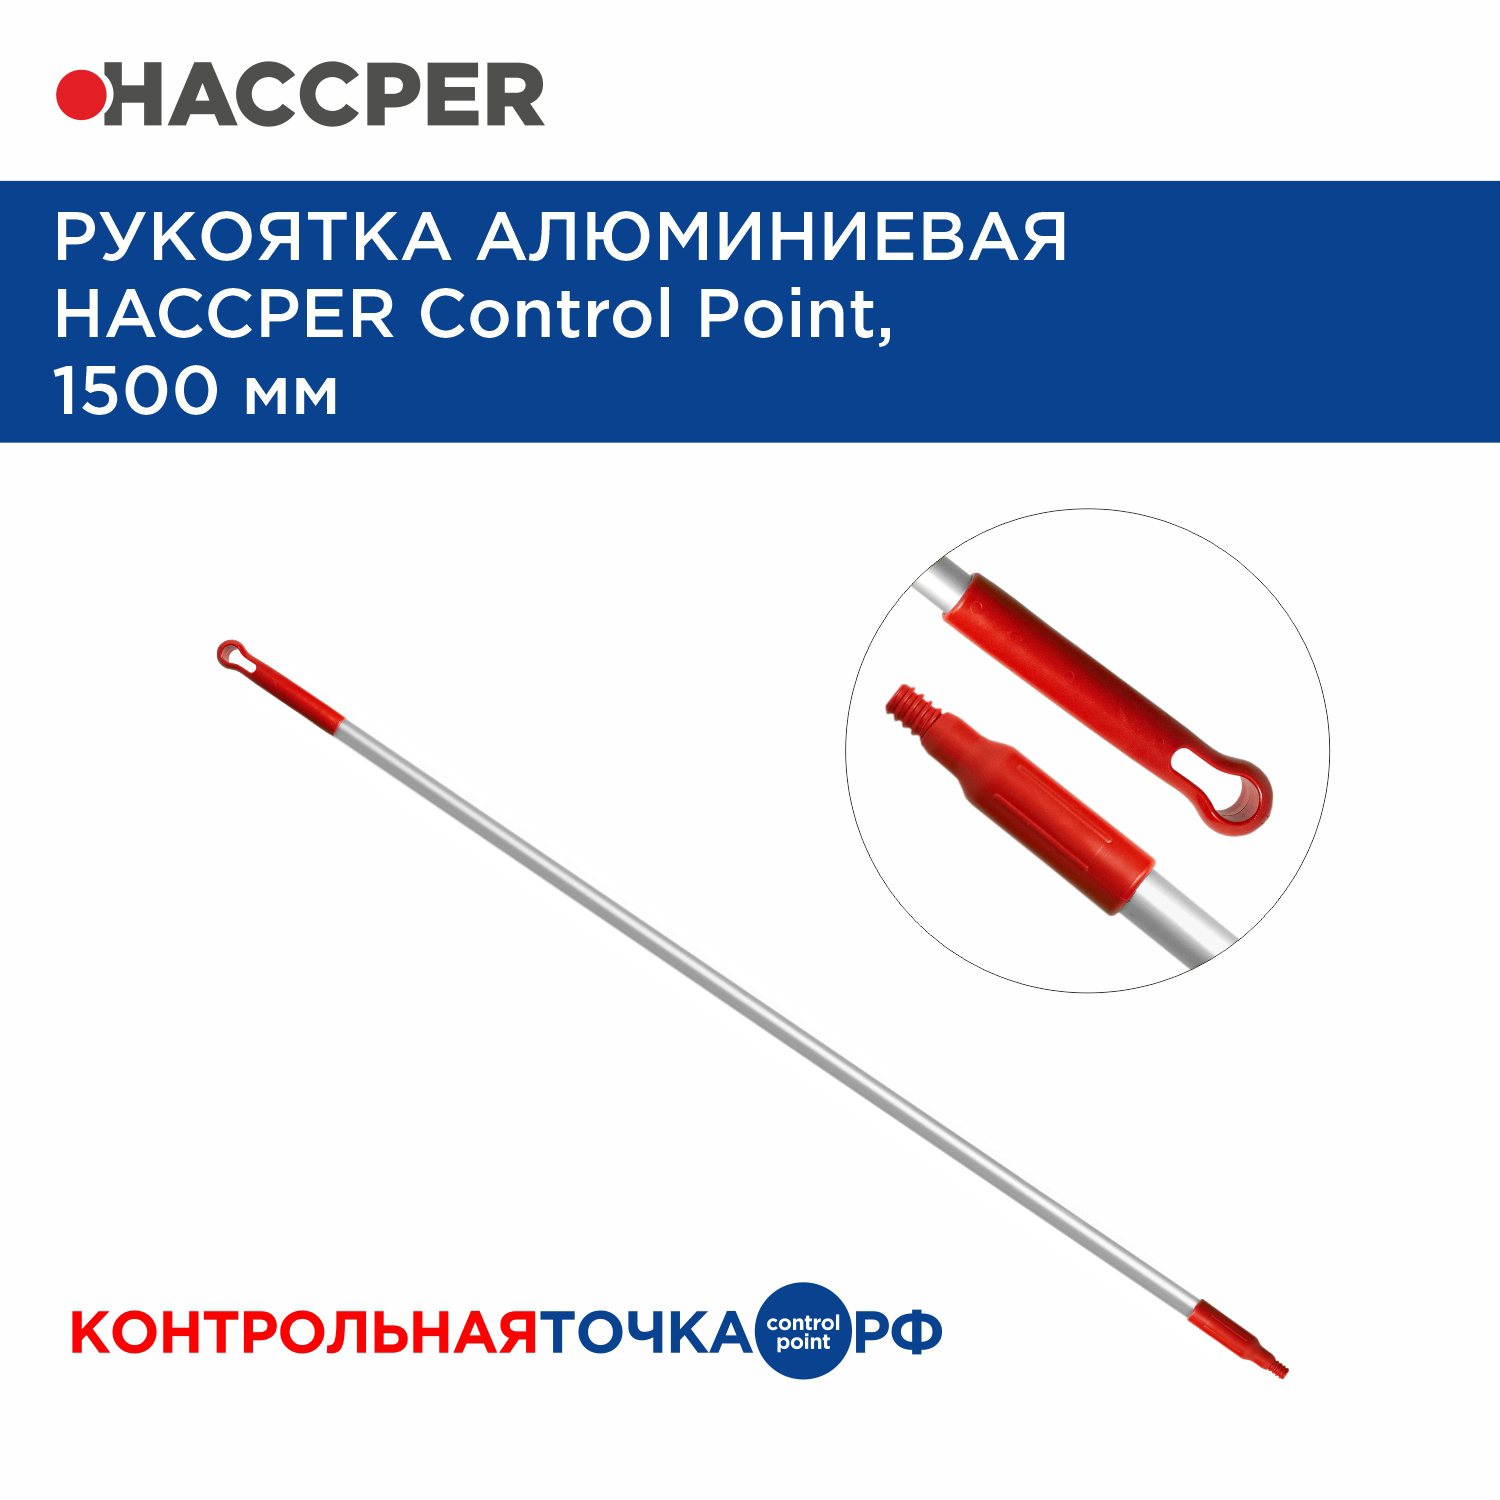 Рукоятка алюминиевая HACCPER Control Point,1500 мм, красная